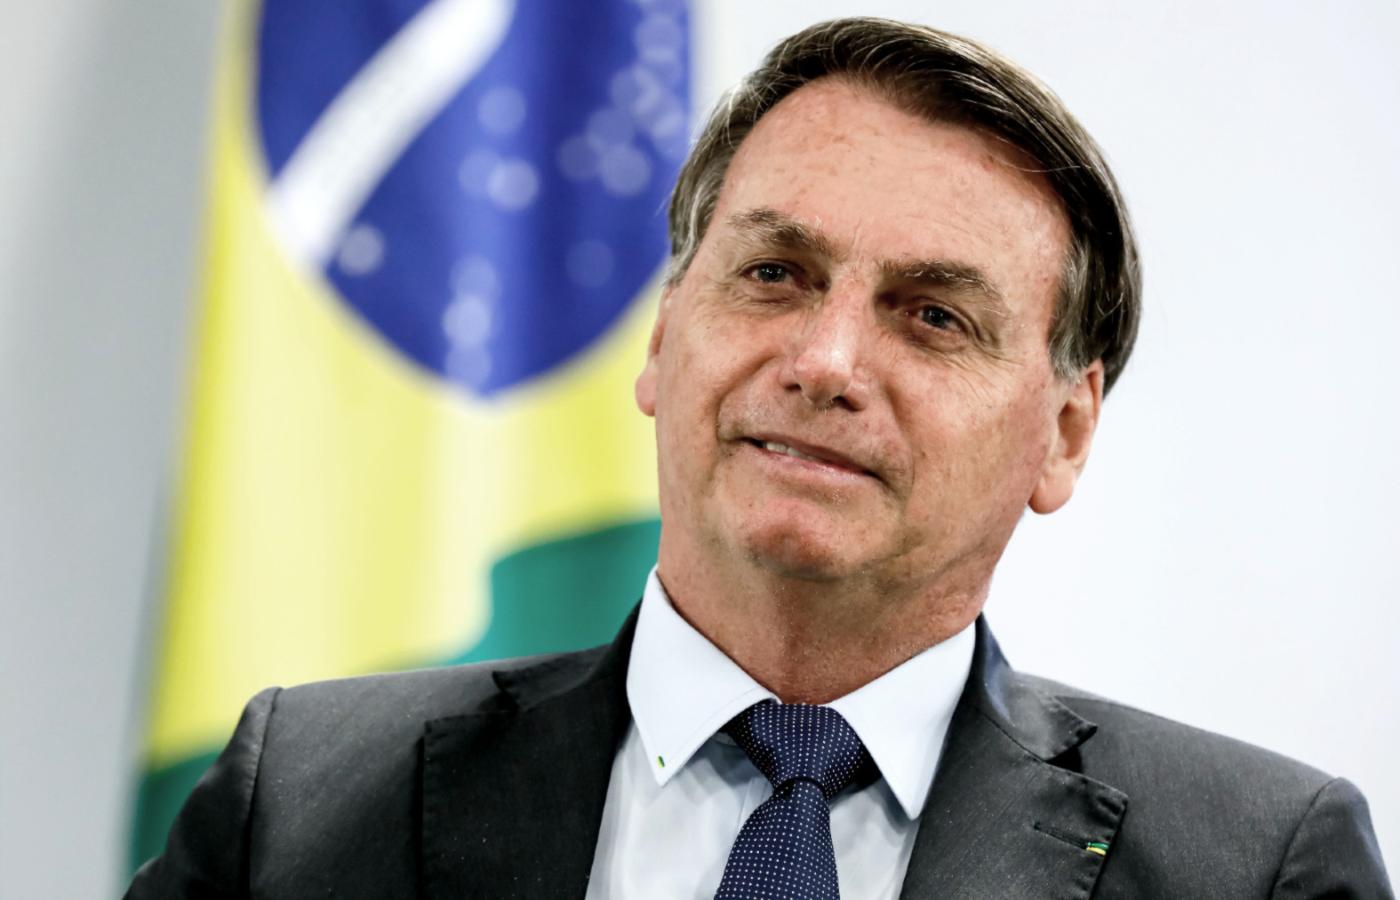 Jair Bolsonaro, używając prezydenckiego prawa weta, ograniczył obowiązek noszenia masek ochronnych w przestrzeni publicznej.